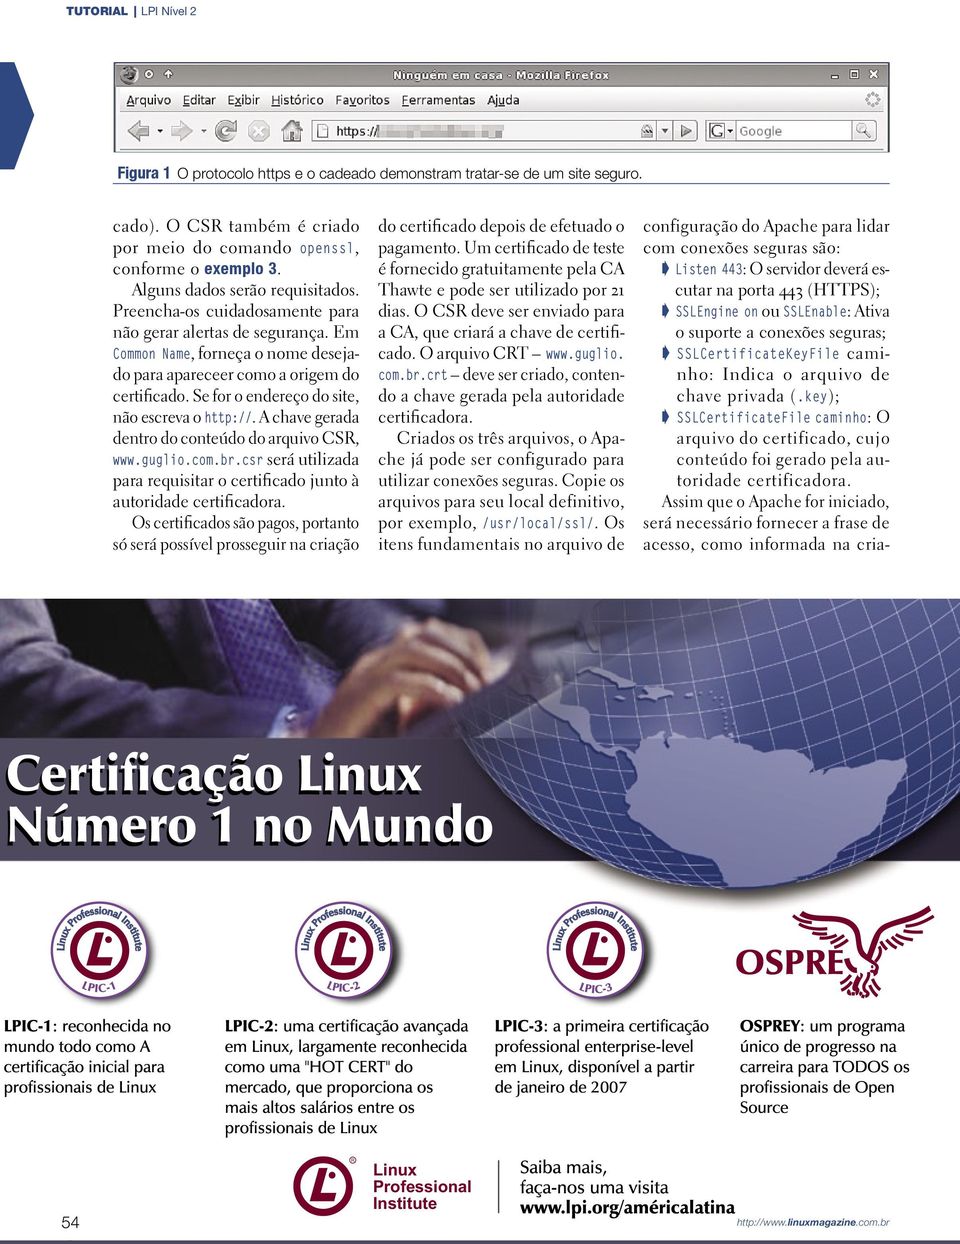 Se for o endereço do site, não escreva o http://. A chave gerada dentro do conteúdo do arquivo CSR, www.guglio.com.br.csr será utilizada para requisitar o certificado junto à autoridade certificadora.